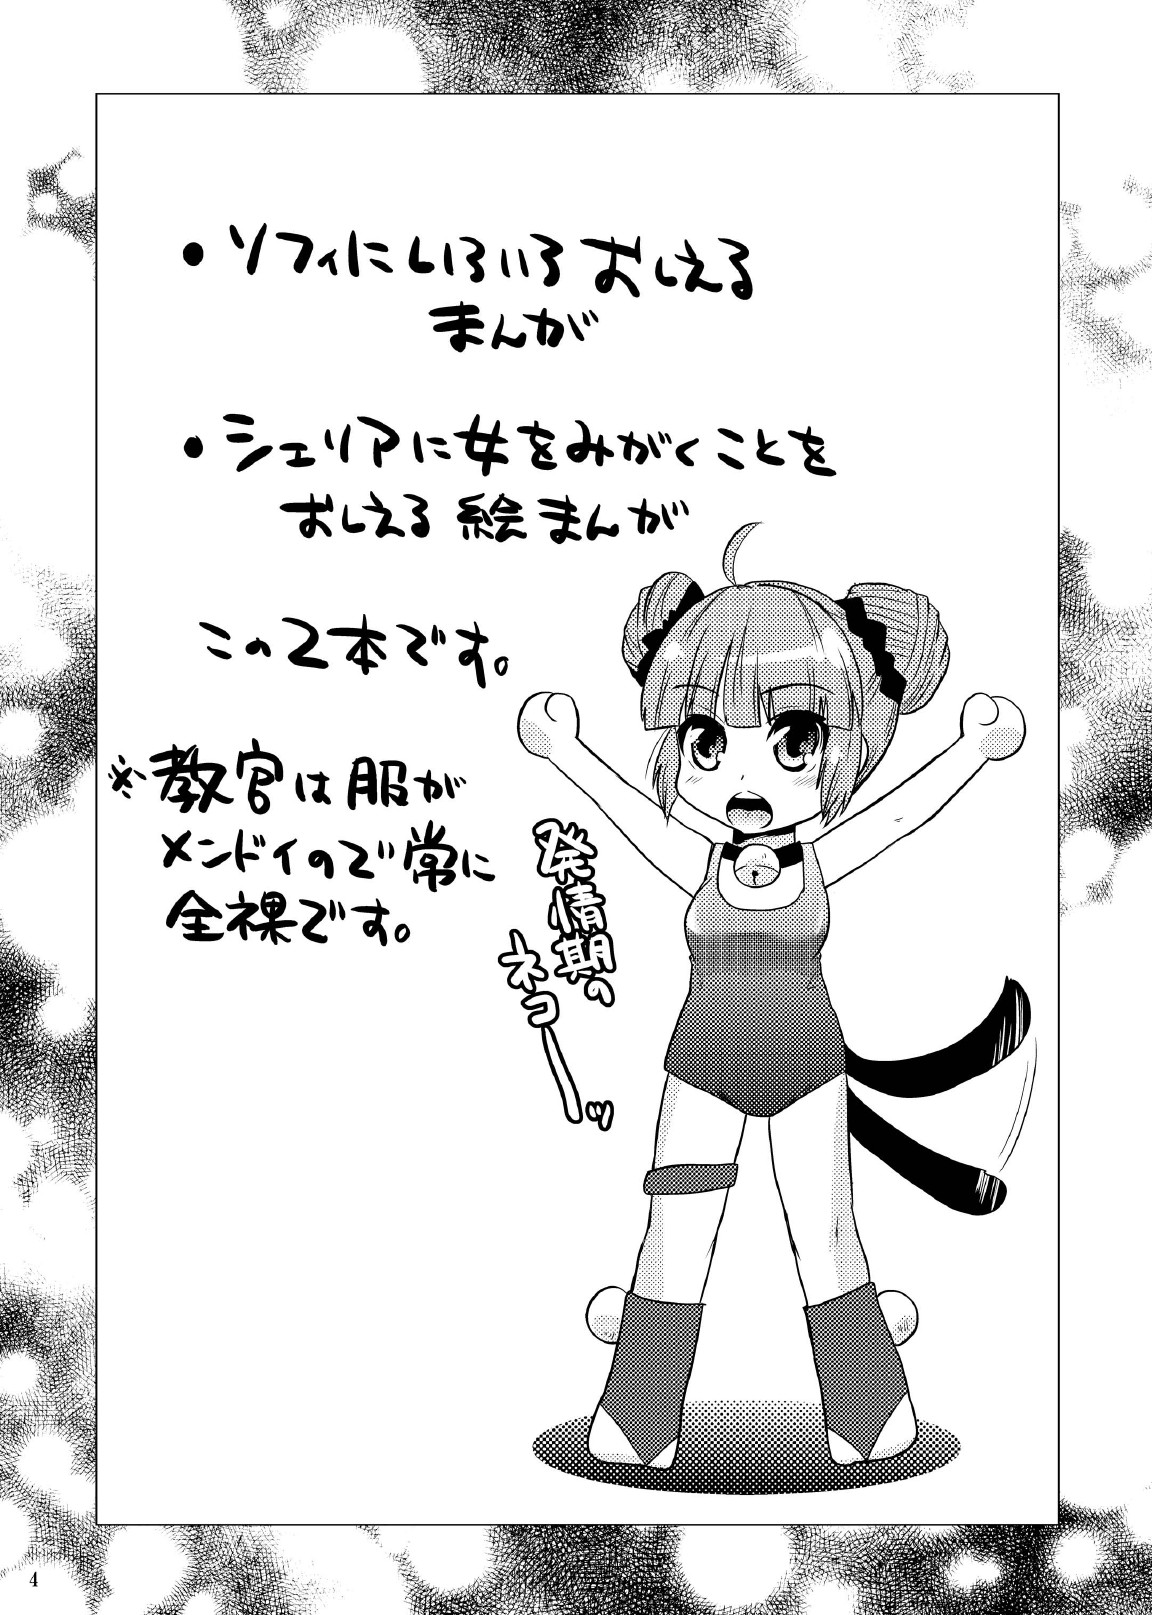 (COMIC1☆04) [メタネコ (深凪ウミヒト)] デュアライズガール (テイルズオブグレイセス)